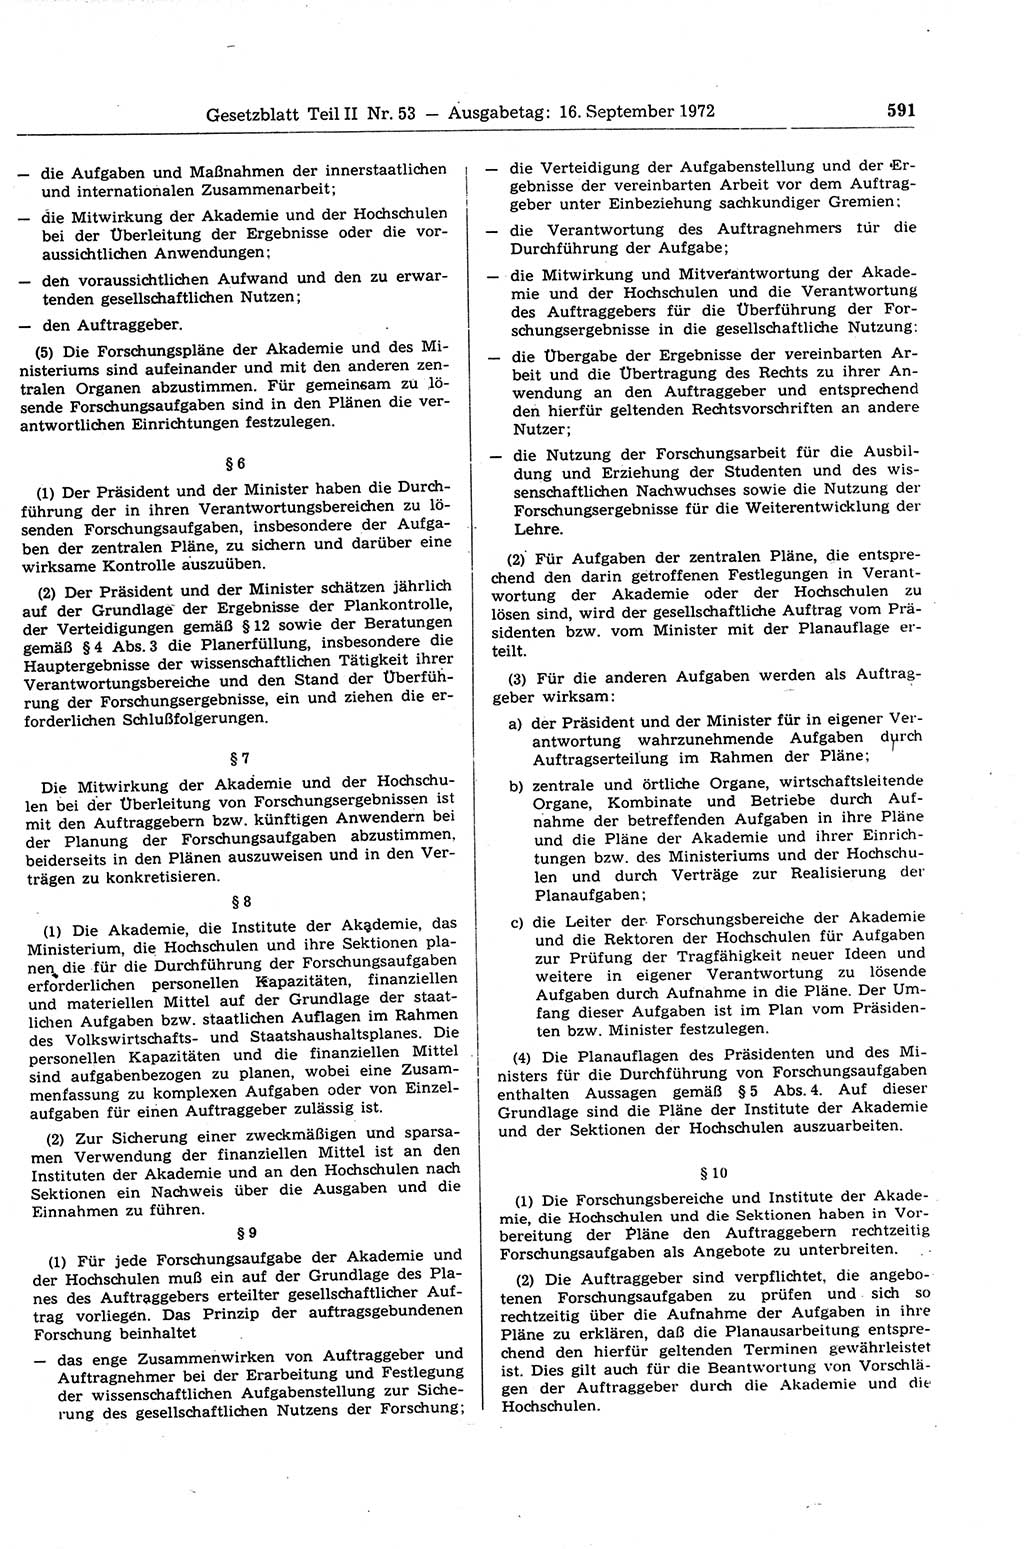 Gesetzblatt (GBl.) der Deutschen Demokratischen Republik (DDR) Teil ⅠⅠ 1972, Seite 591 (GBl. DDR ⅠⅠ 1972, S. 591)